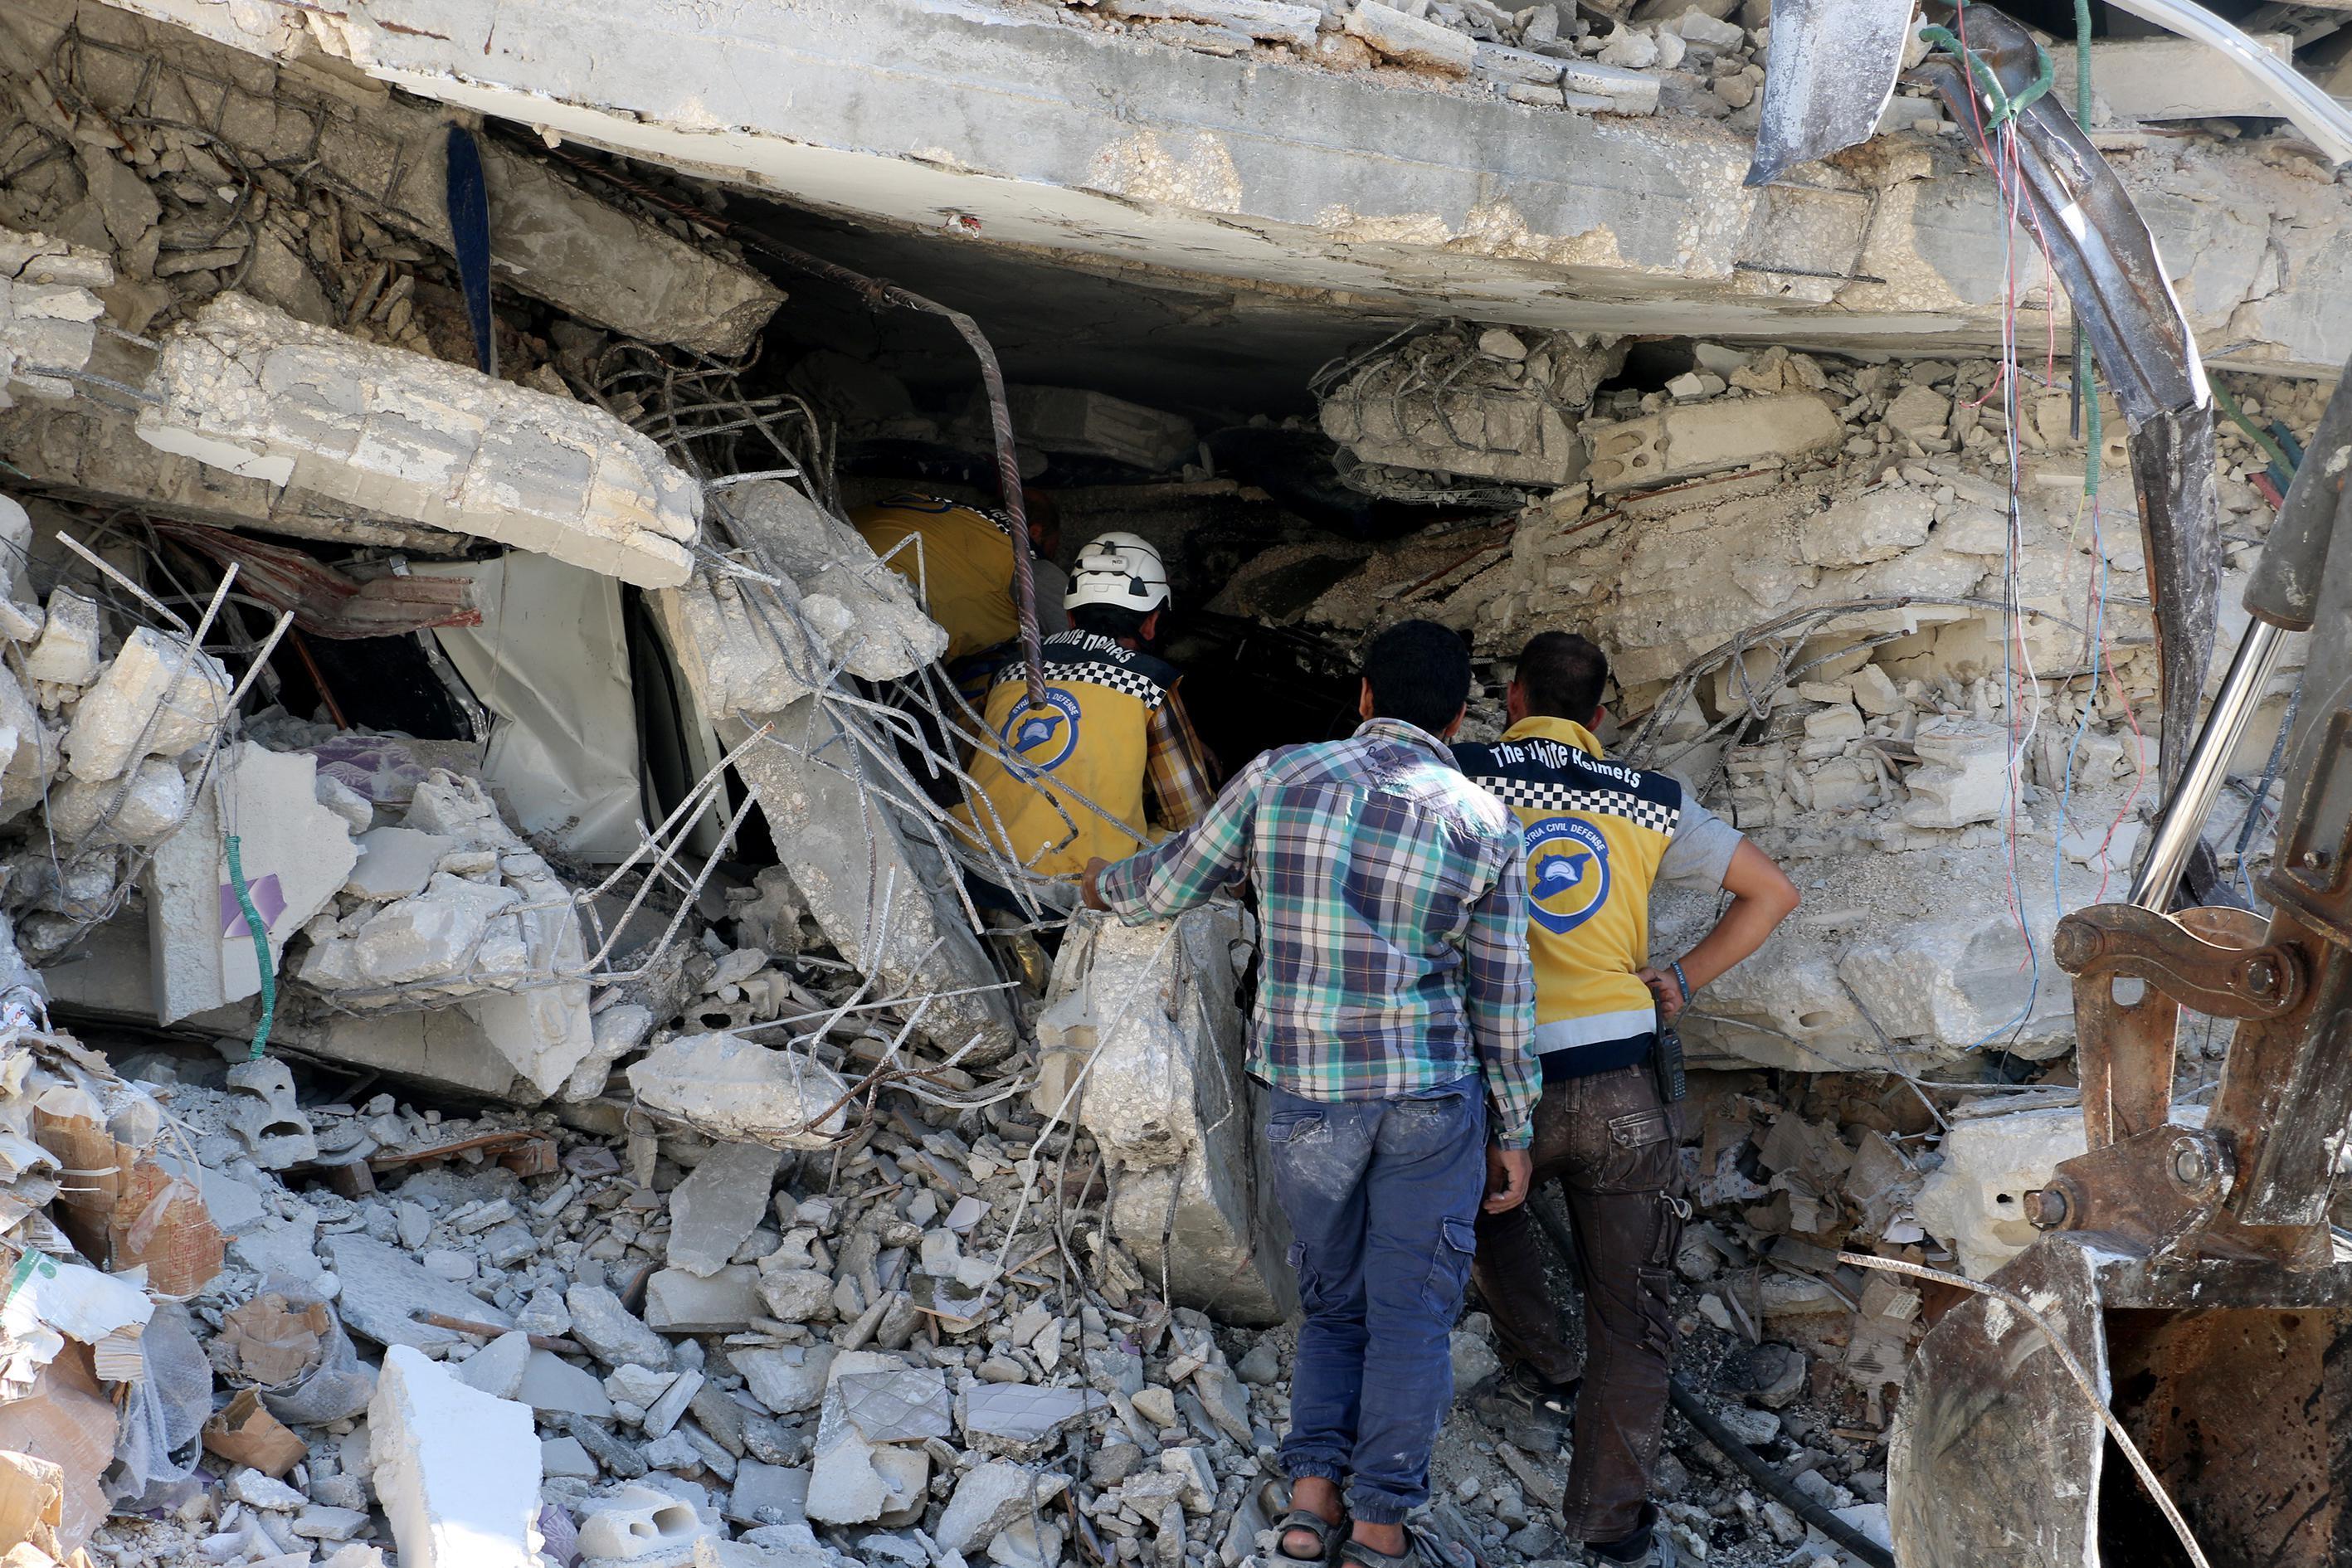 İdlibde patlama: 32 ölü, 45 yaralı